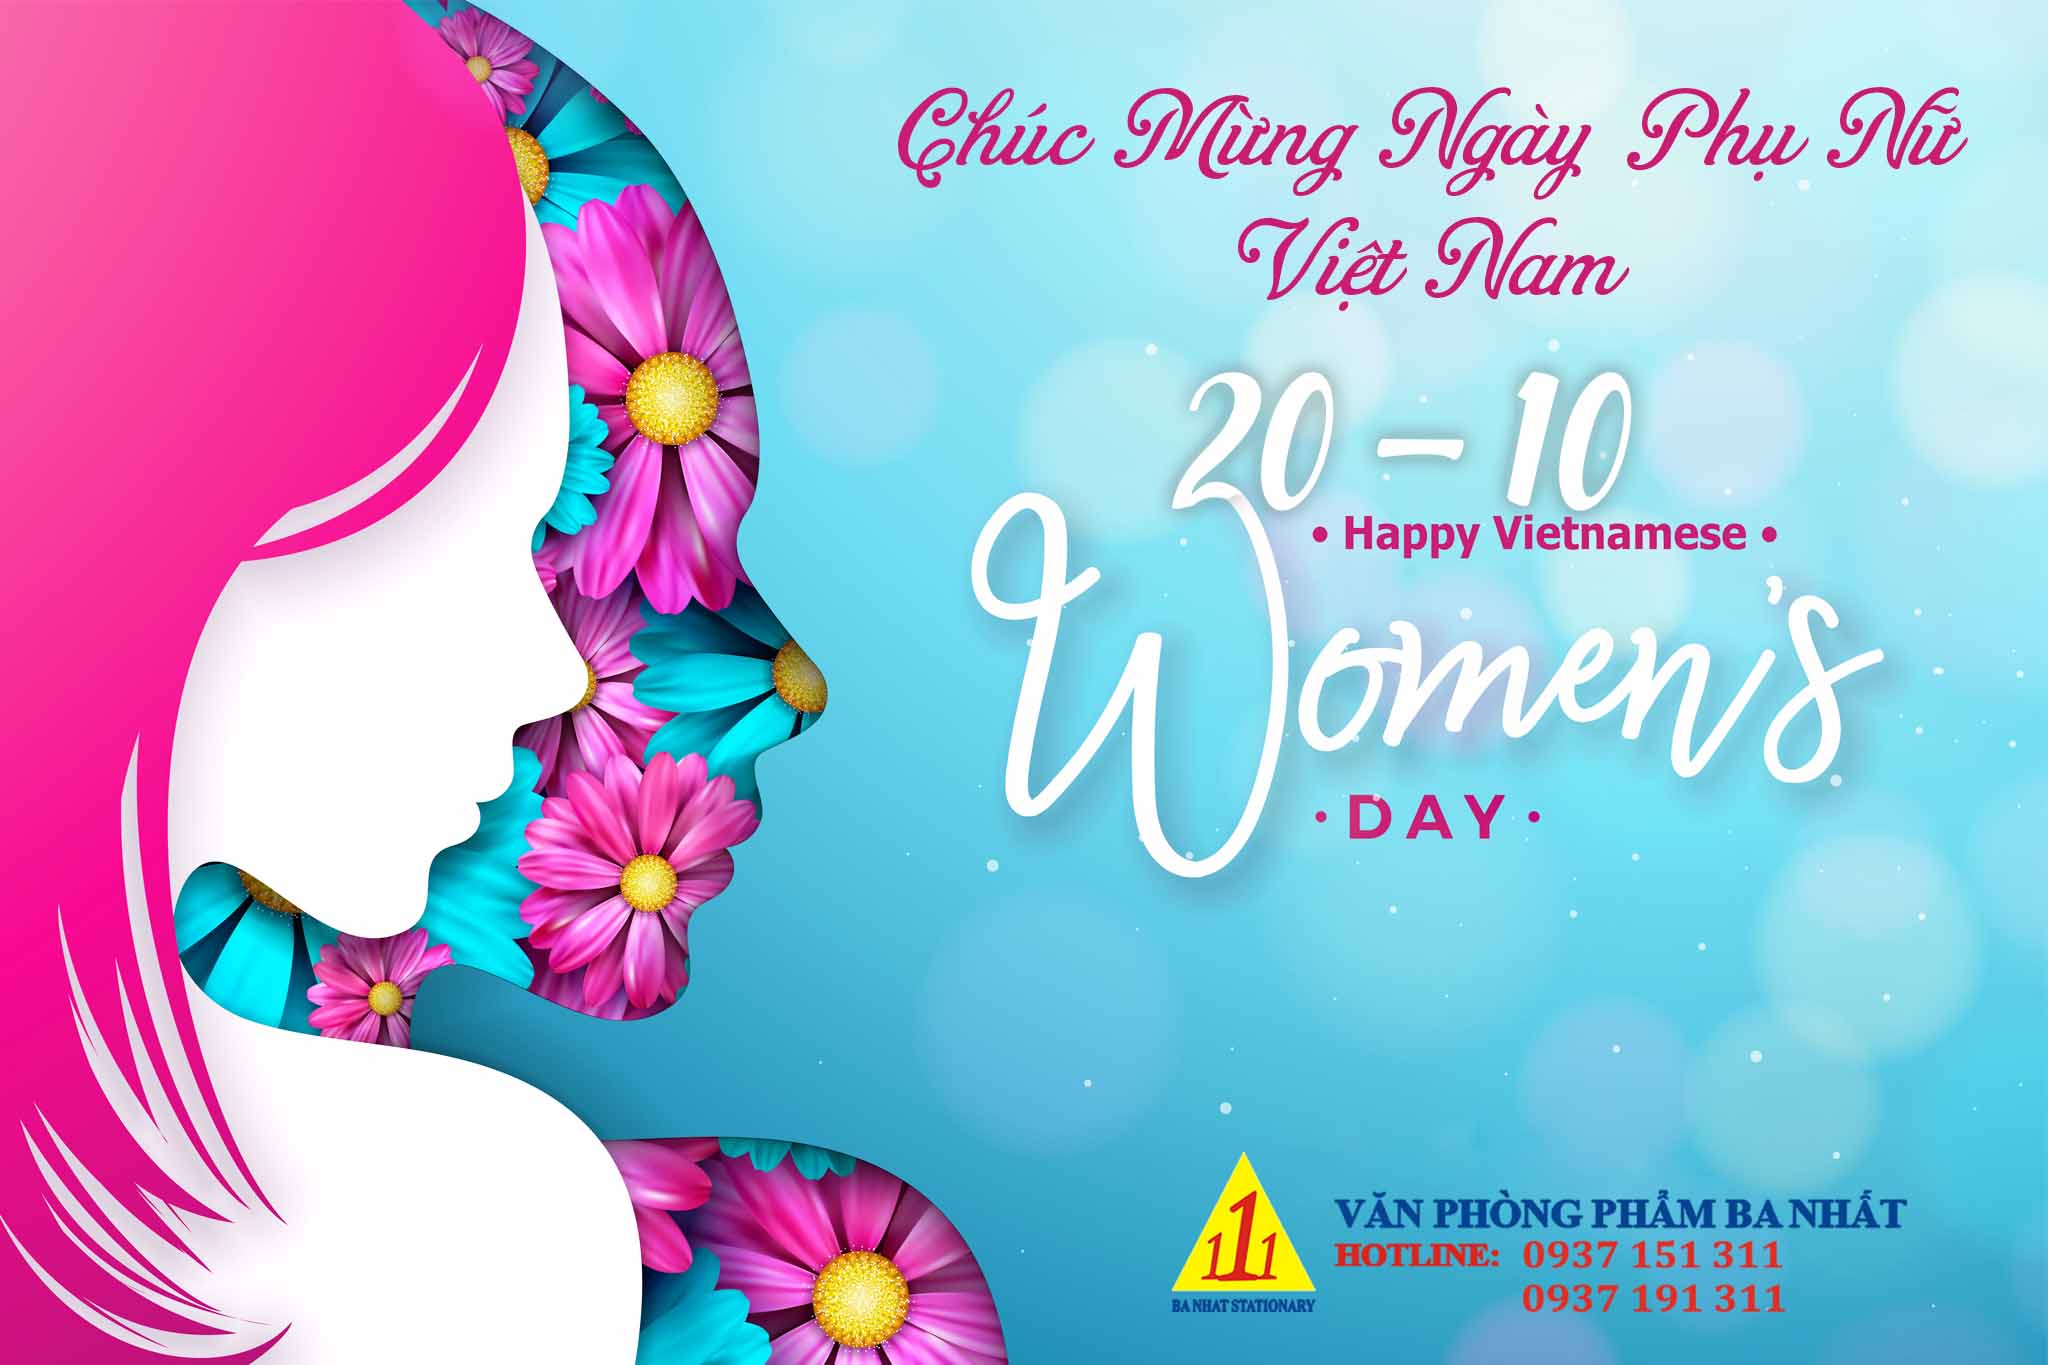 Chúc mừng ngày phụ nữ Việt Nam 20-10-2021